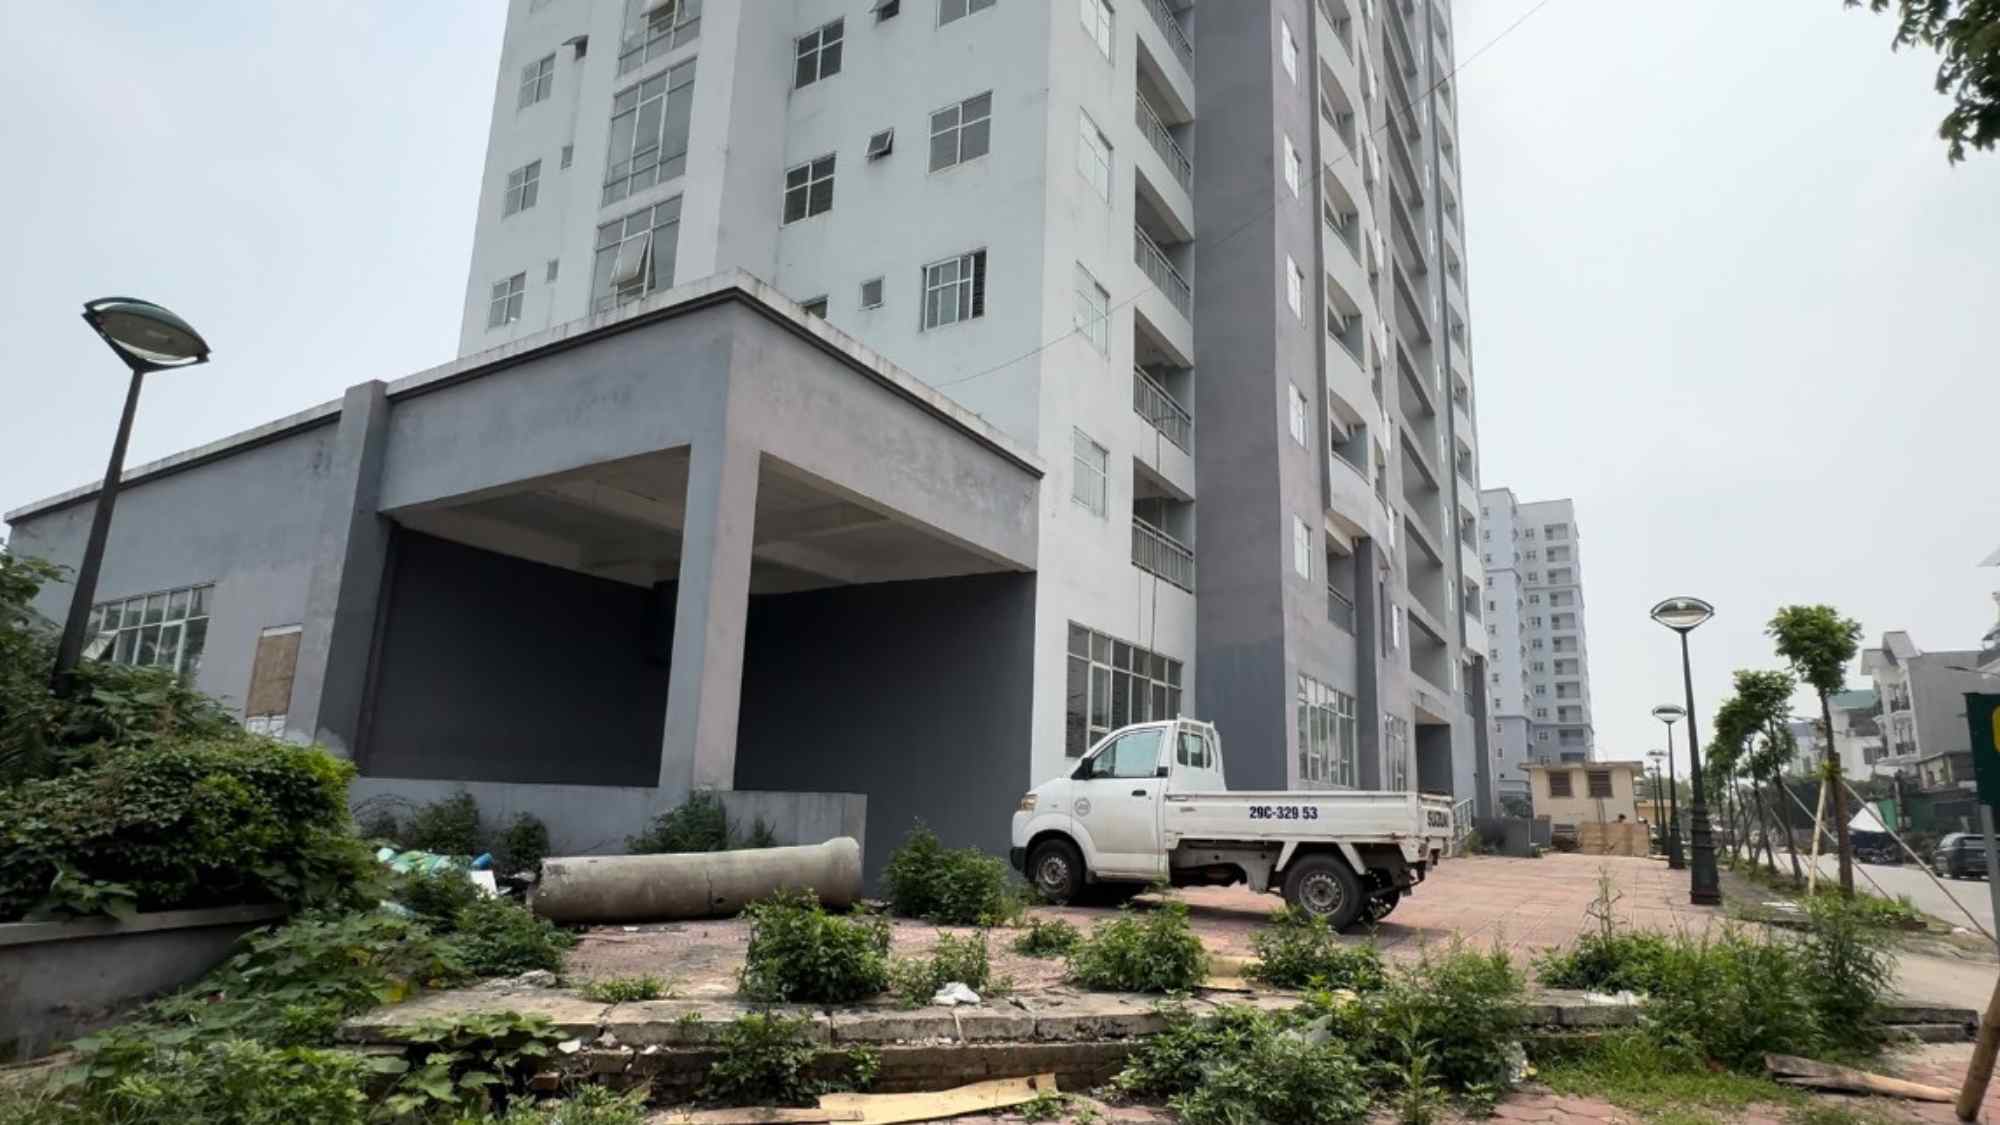 Dự án nhà tái định cư Đền Lừ III (TP Hà Nội) mặc dù hoàn thiện từ năm 2017 nhưng đến nay ba tòa nhà tái định cư vẫn chưa được đưa vào sử dụng, nhiều hạng mục xuống cấp, hư hỏng nghiêm trọng.